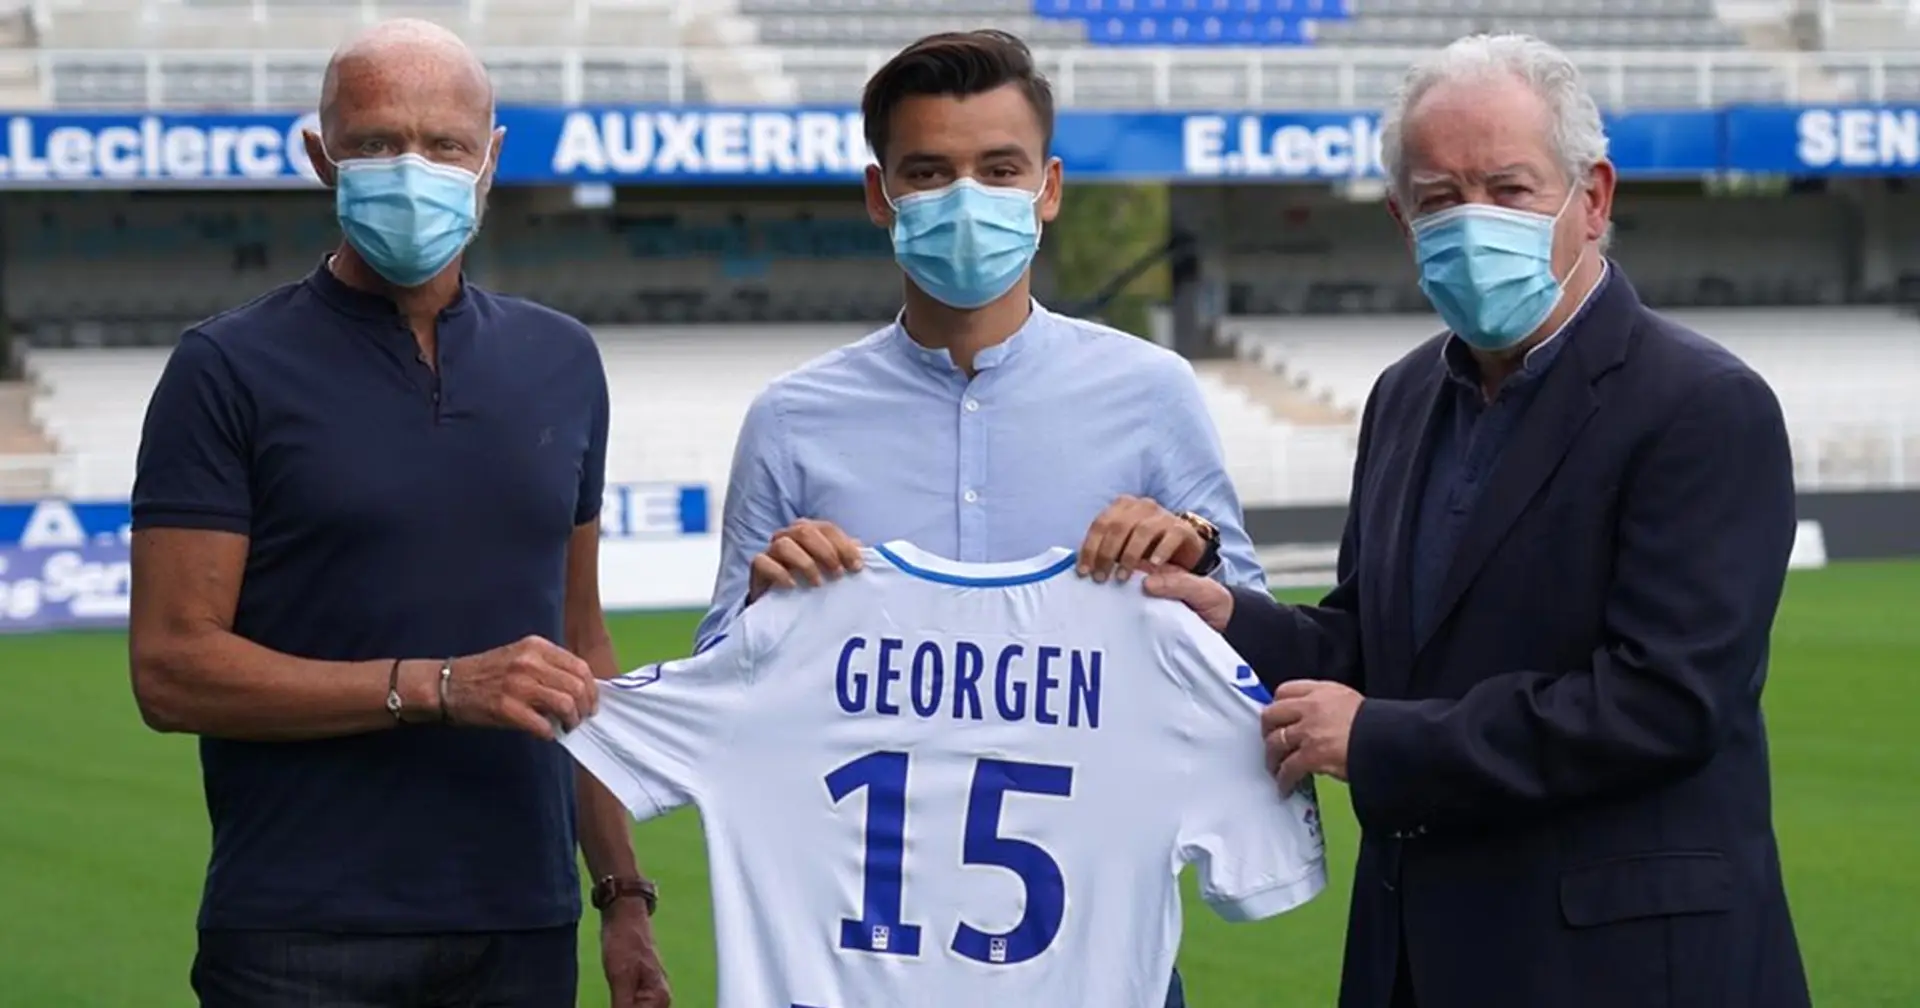 Alec Georgen, formé au Paris Saint-Germain, s'engage officiellement avec l'AJ Auxerre